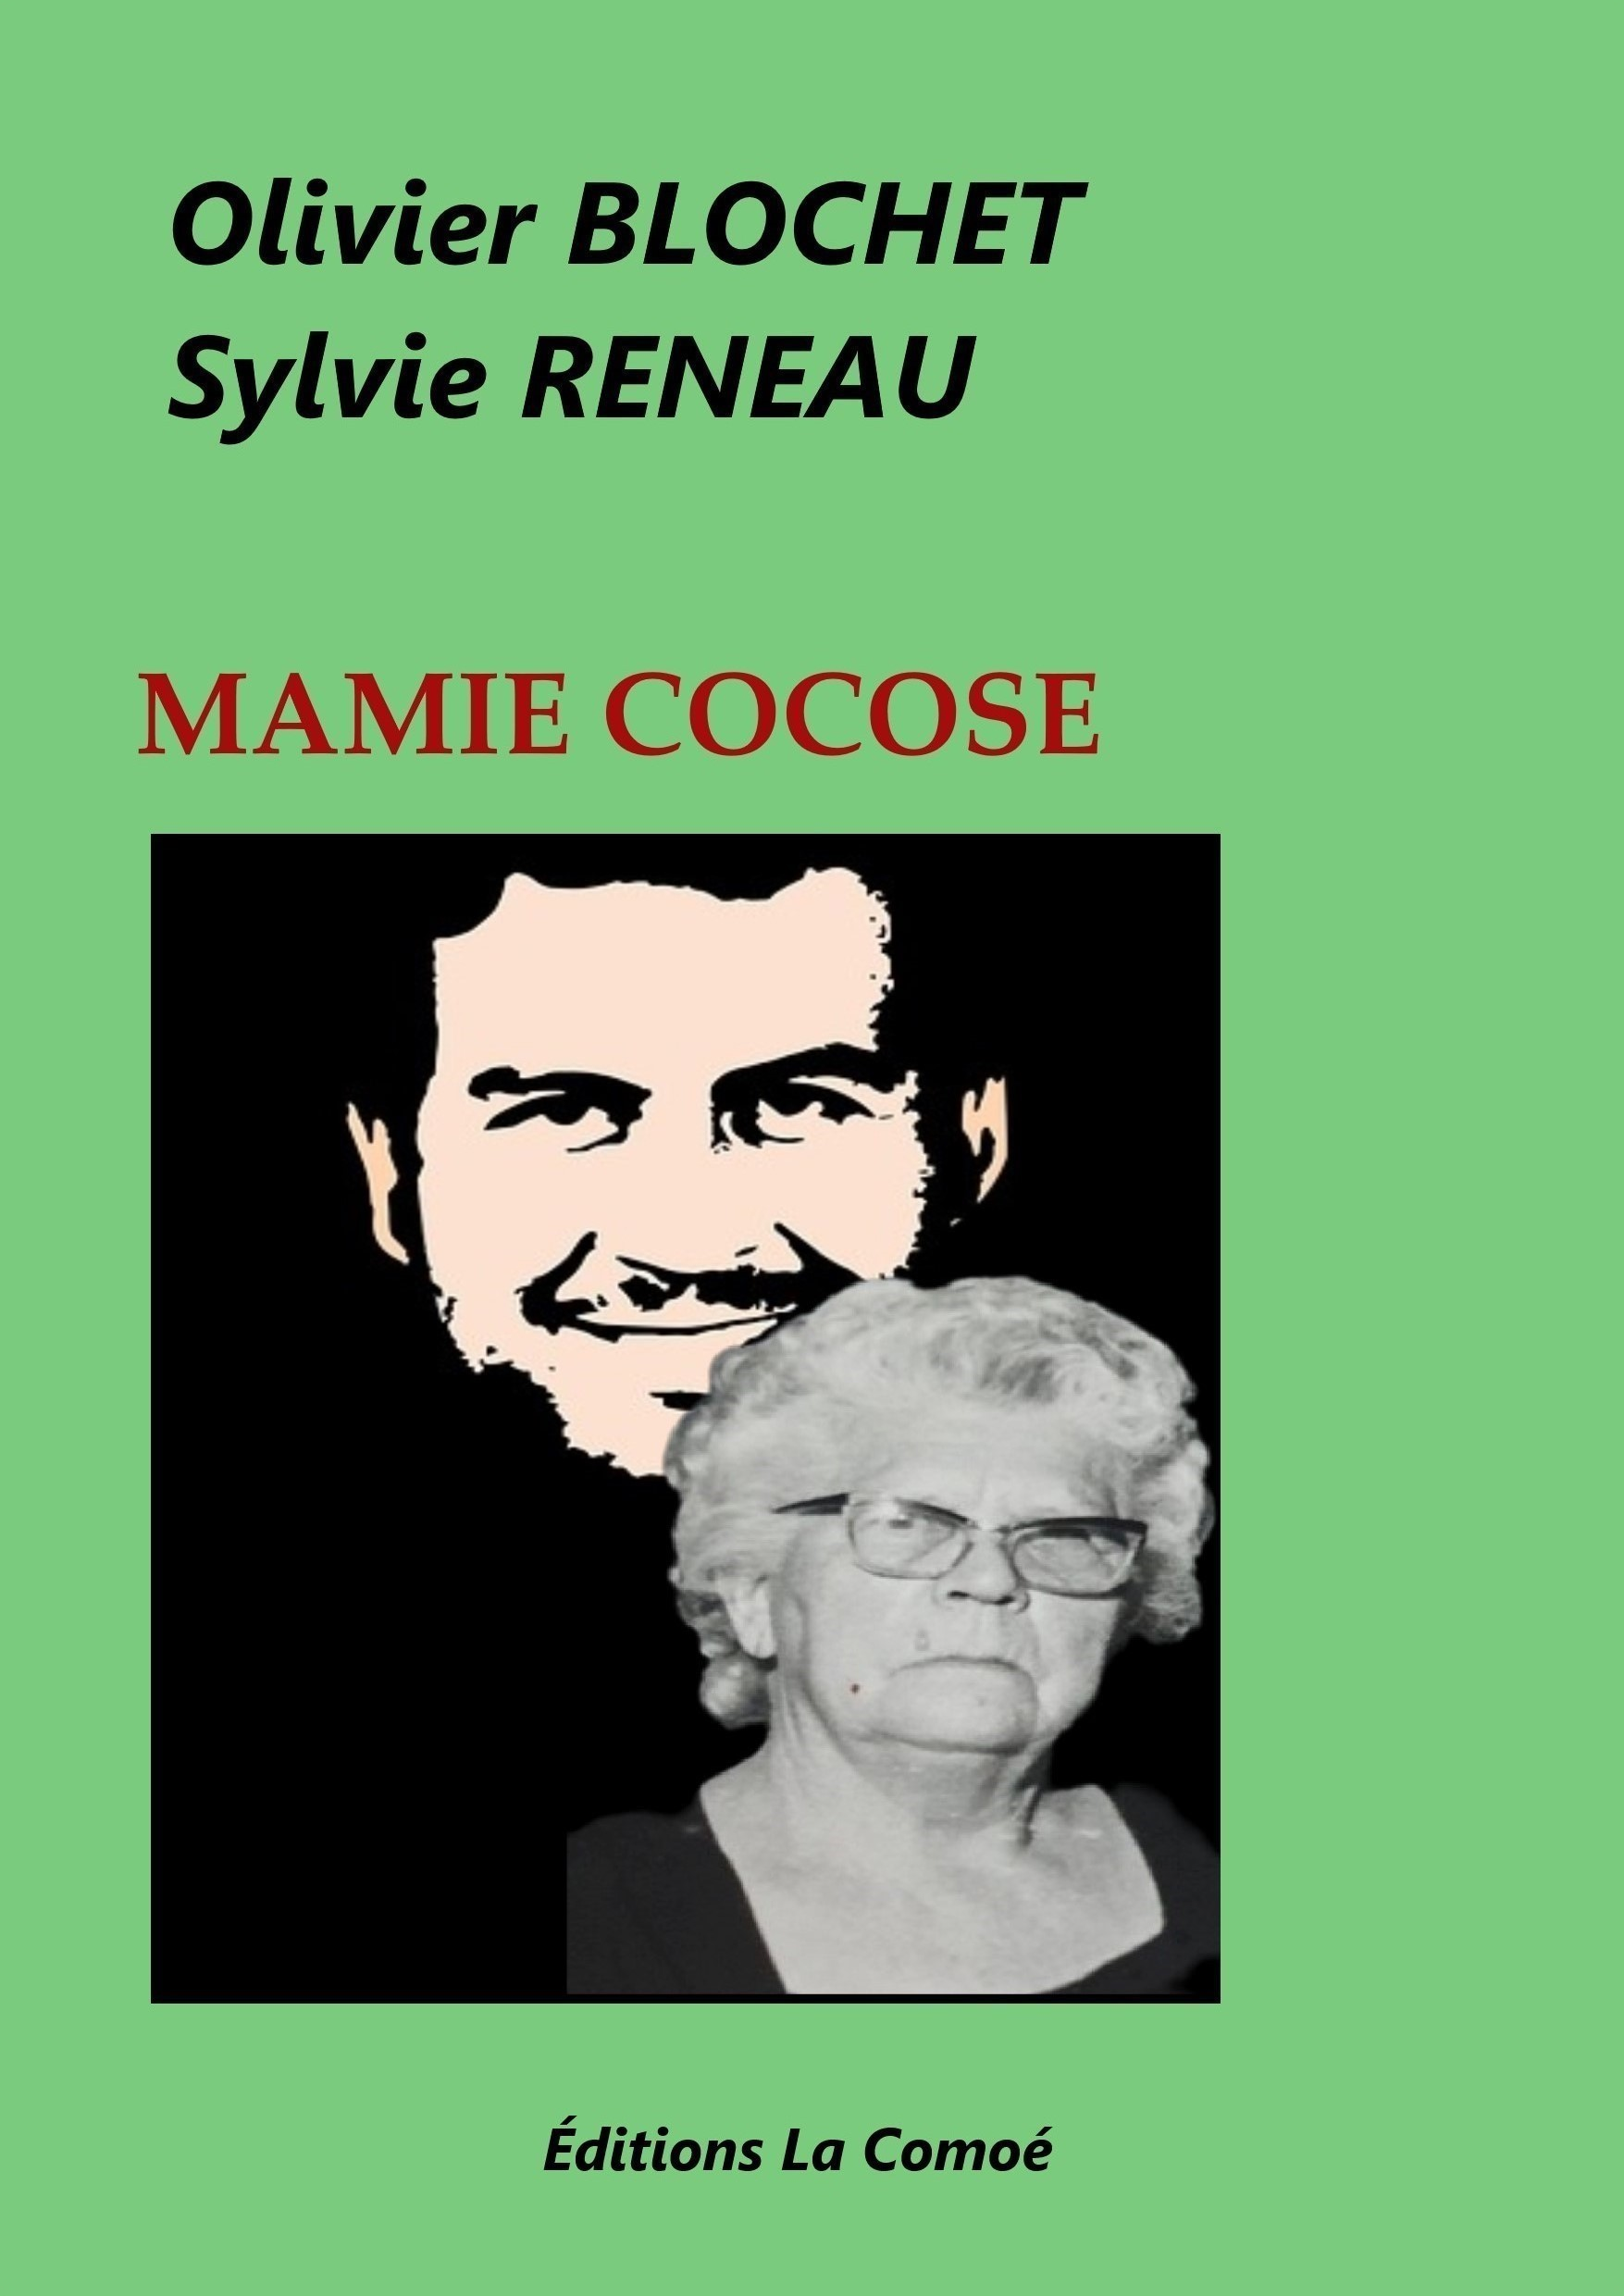 MAMIE COCOSE